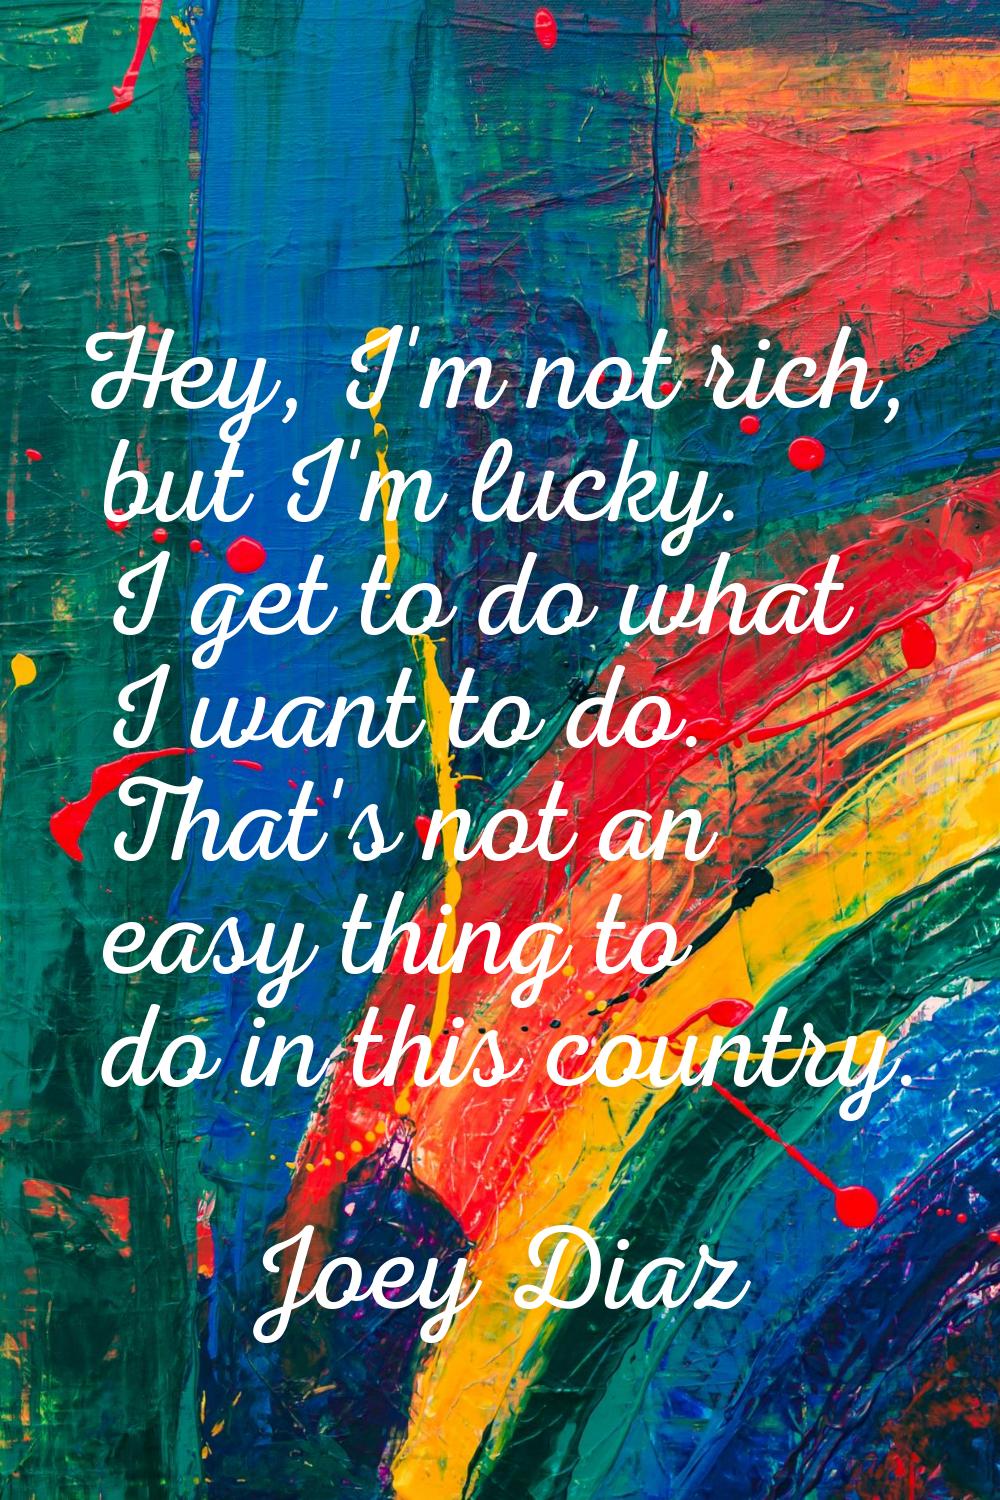 Hey, I'm not rich, but I'm lucky. I get to do what I want to do. That's not an easy thing to do in 